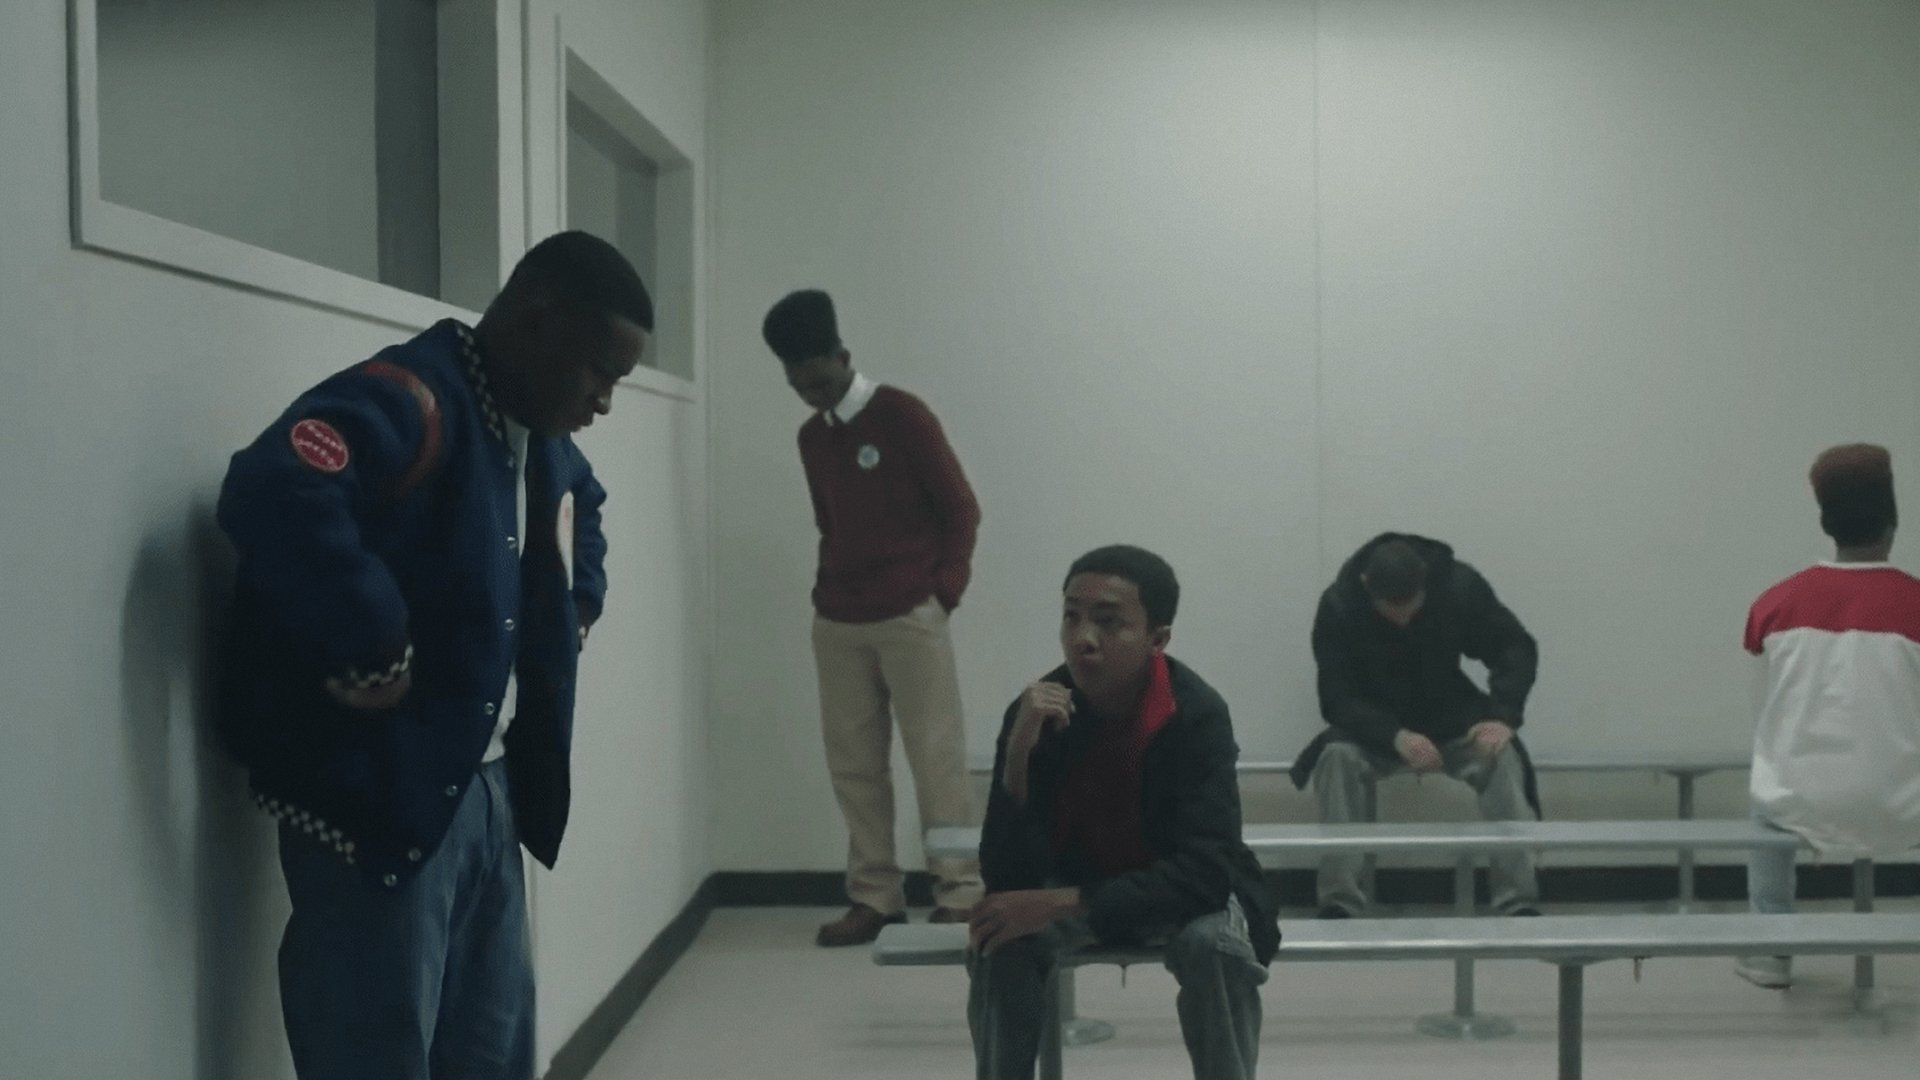 نوجوانان سیاهپوست در زندان در سریال وقتی آنها ما را میبینند